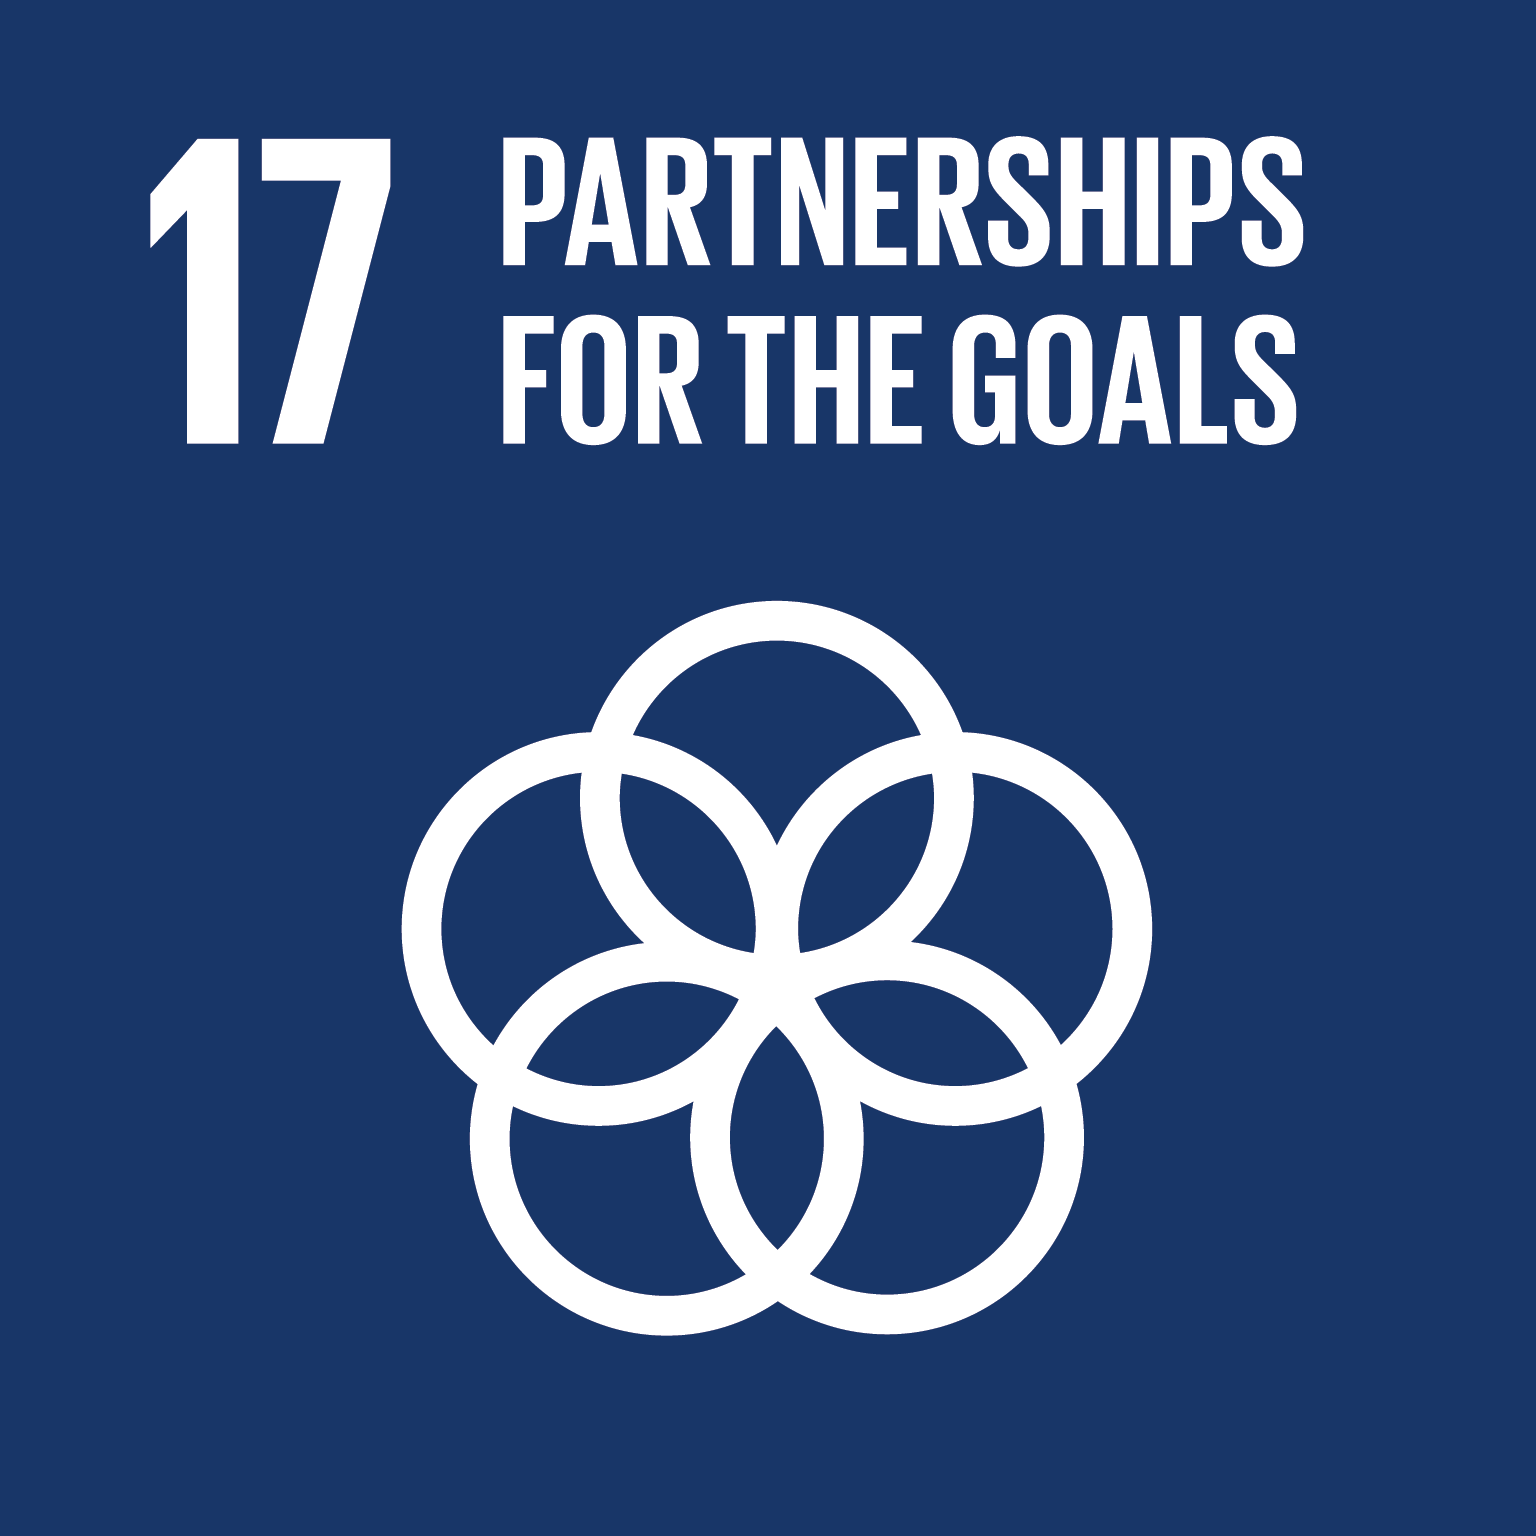 SDG Goal 17